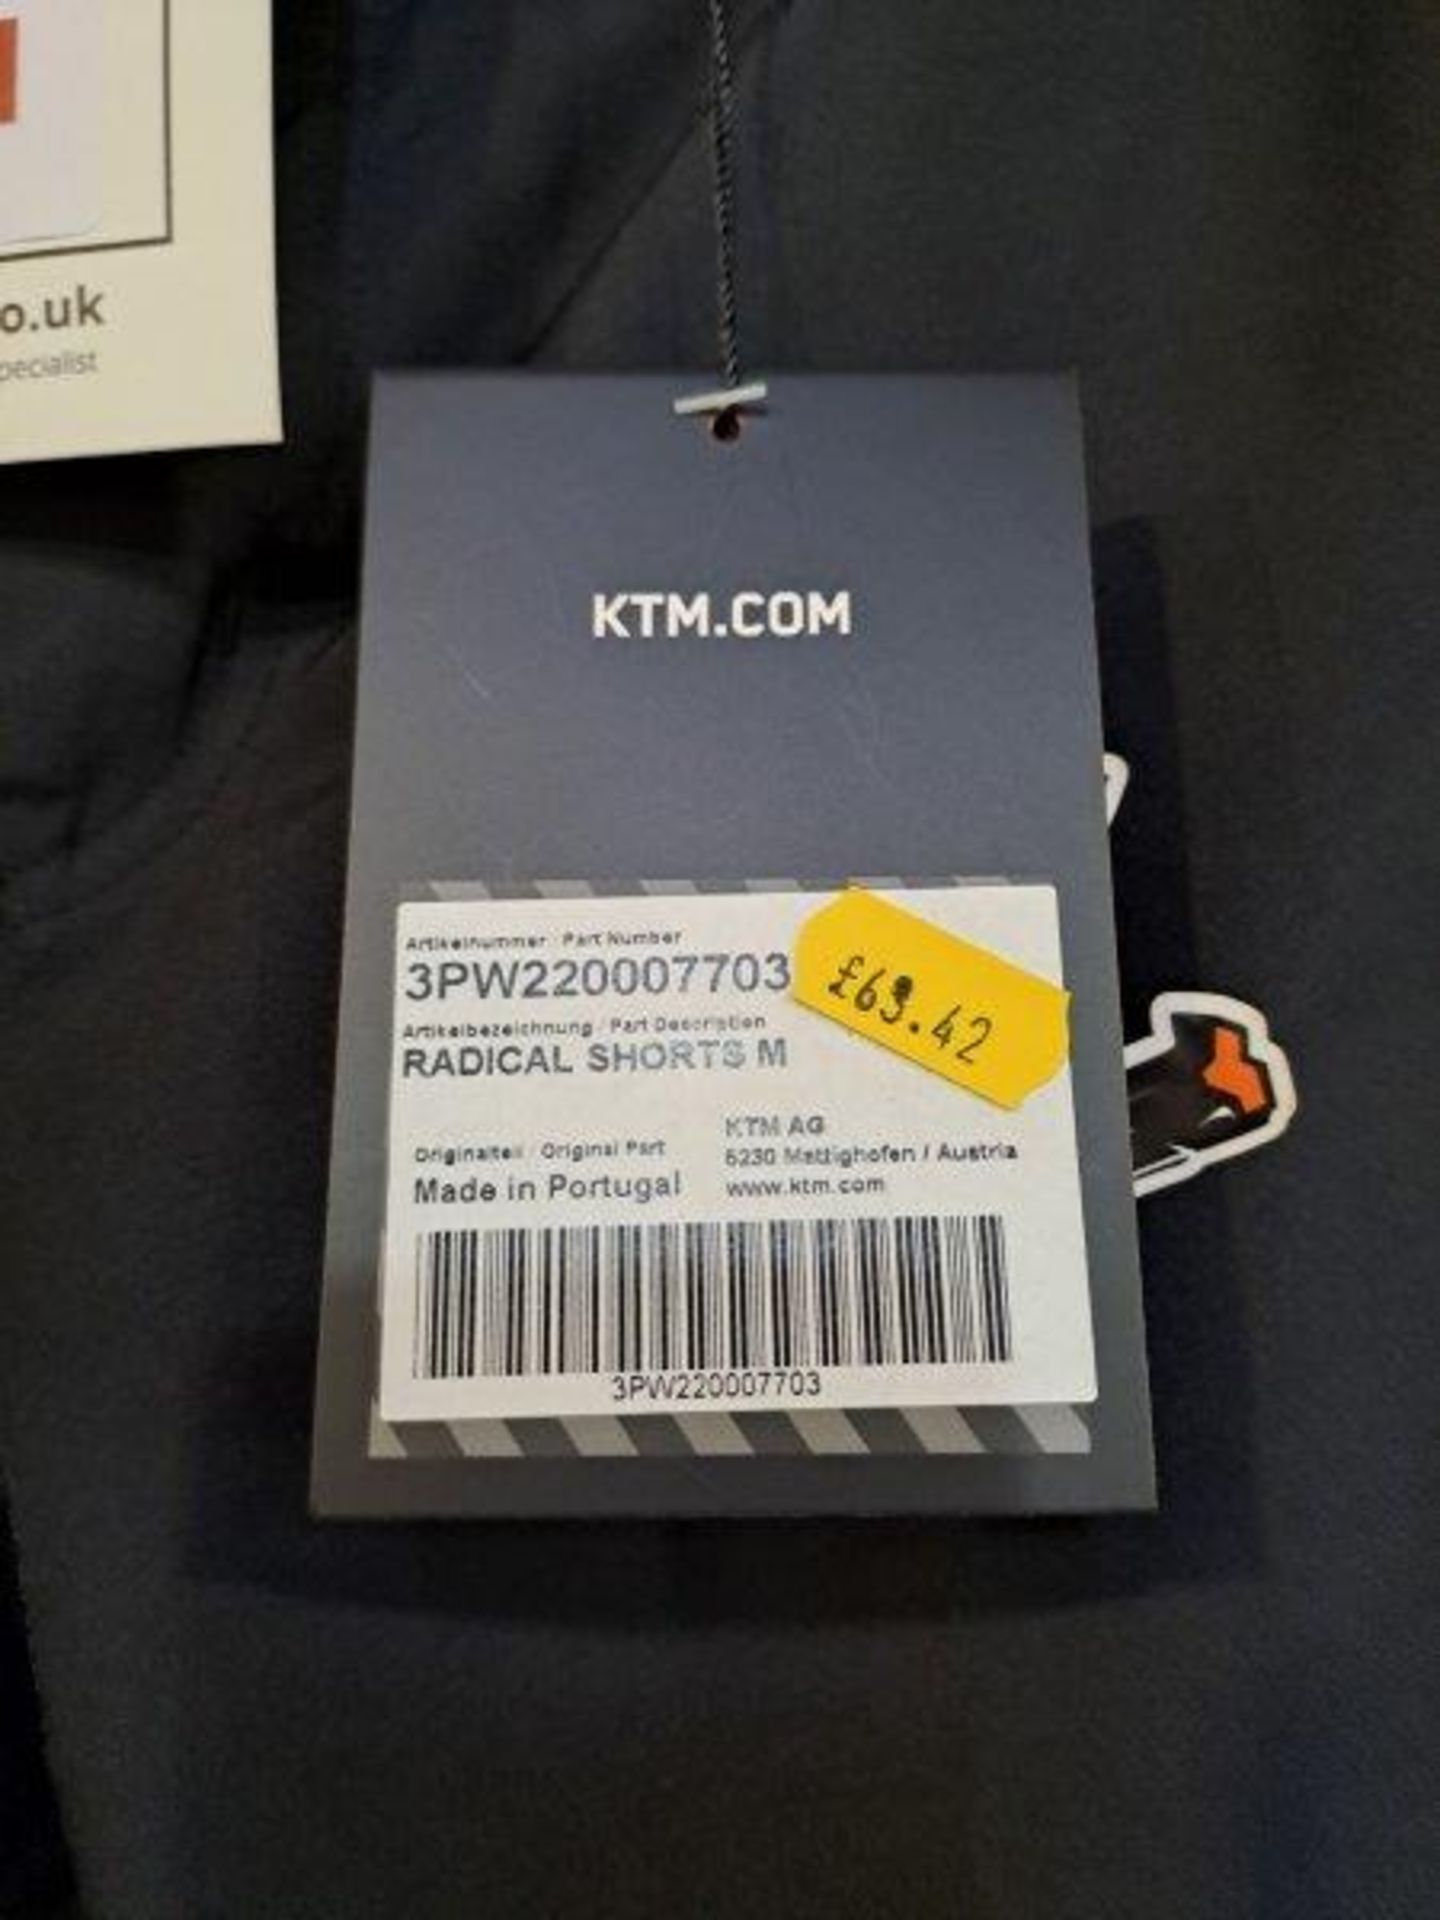 KTM Fashion Clothing - Image 3 of 5